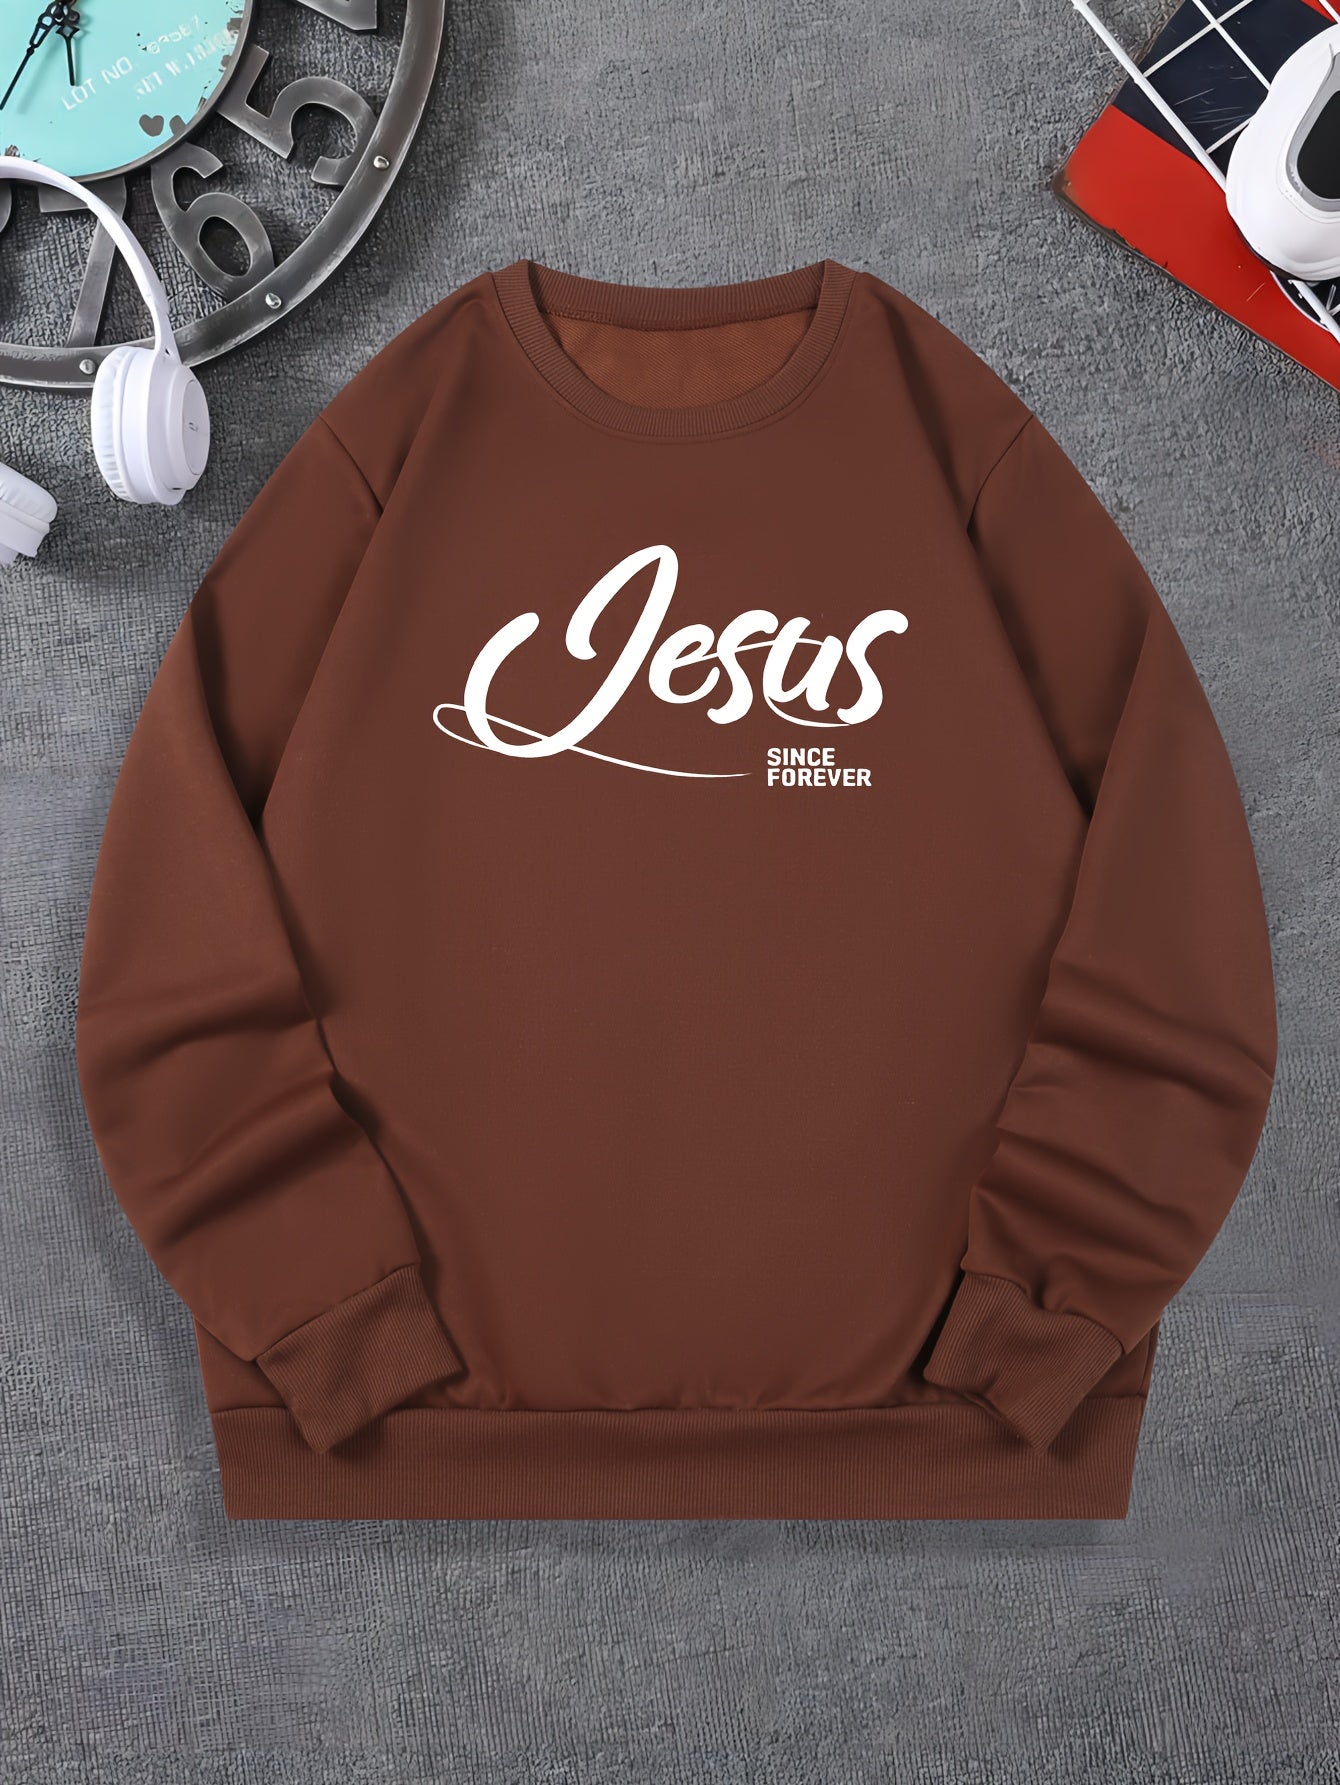 Jesus SINCE FOREVER Print Men's Christian Pullover Sweatshirt claimedbygoddesigns